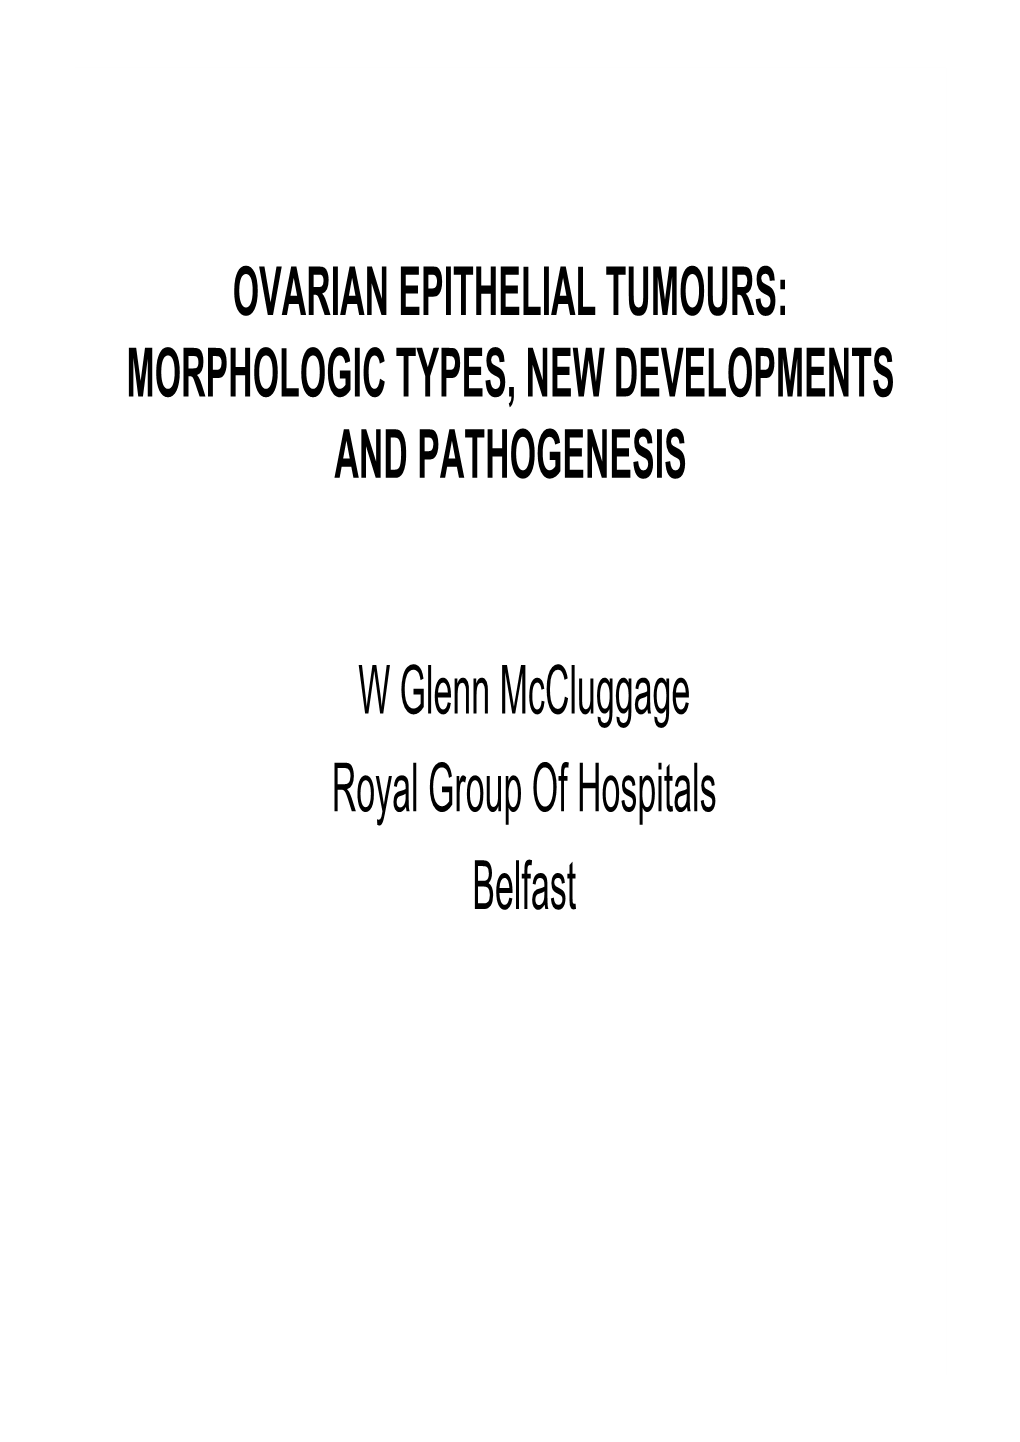 Ovarian Epithelial Tumours: Morphologic Types, New Developments and Pathogenesis